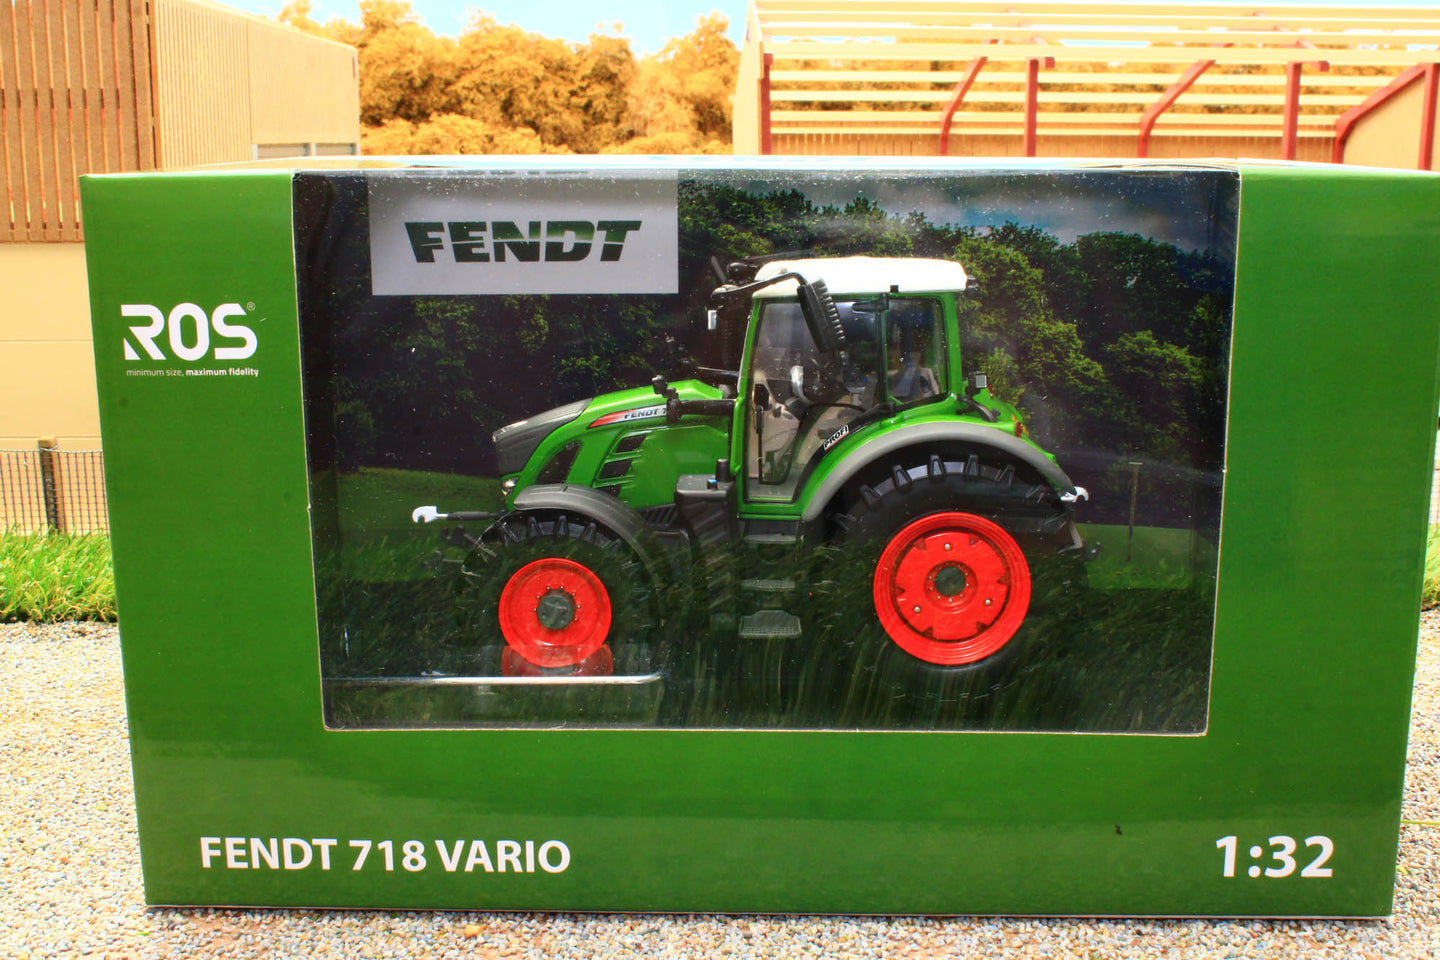 R30185.6 ROS Fendt 718 Vario Tractor